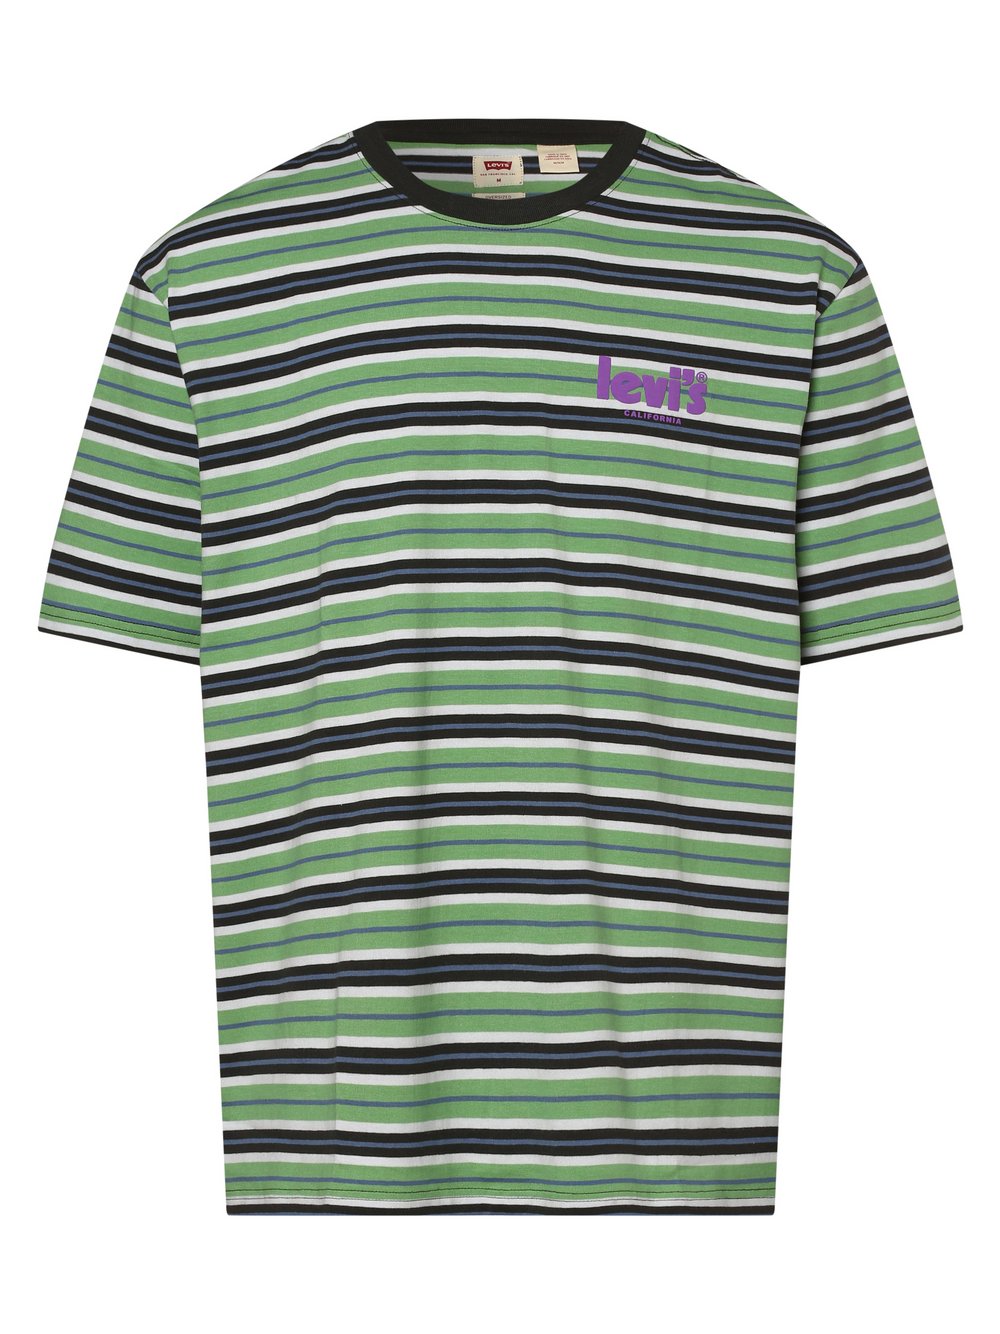 Levi's - T-shirt męski, zielony|wielokolorowy